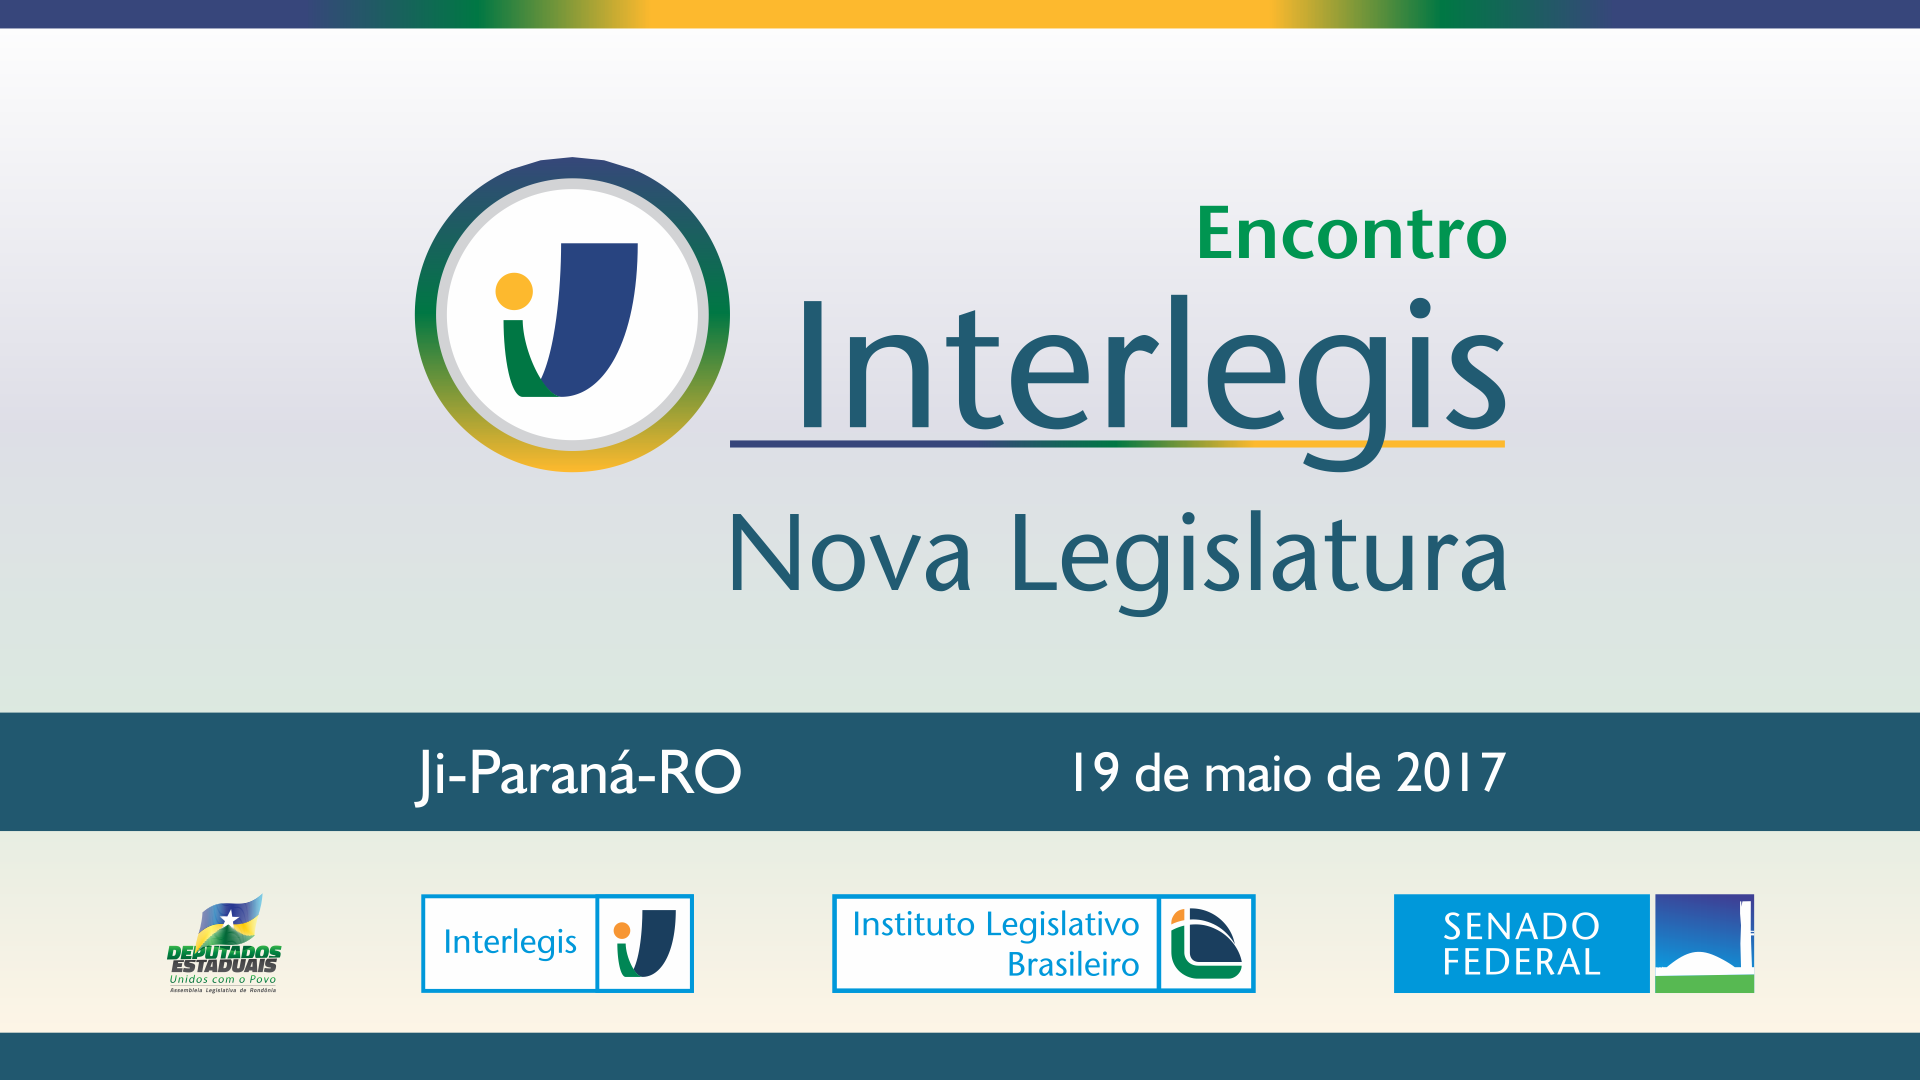 Rondônia sediará vários eventos Interlegis/ILB na próxima semana